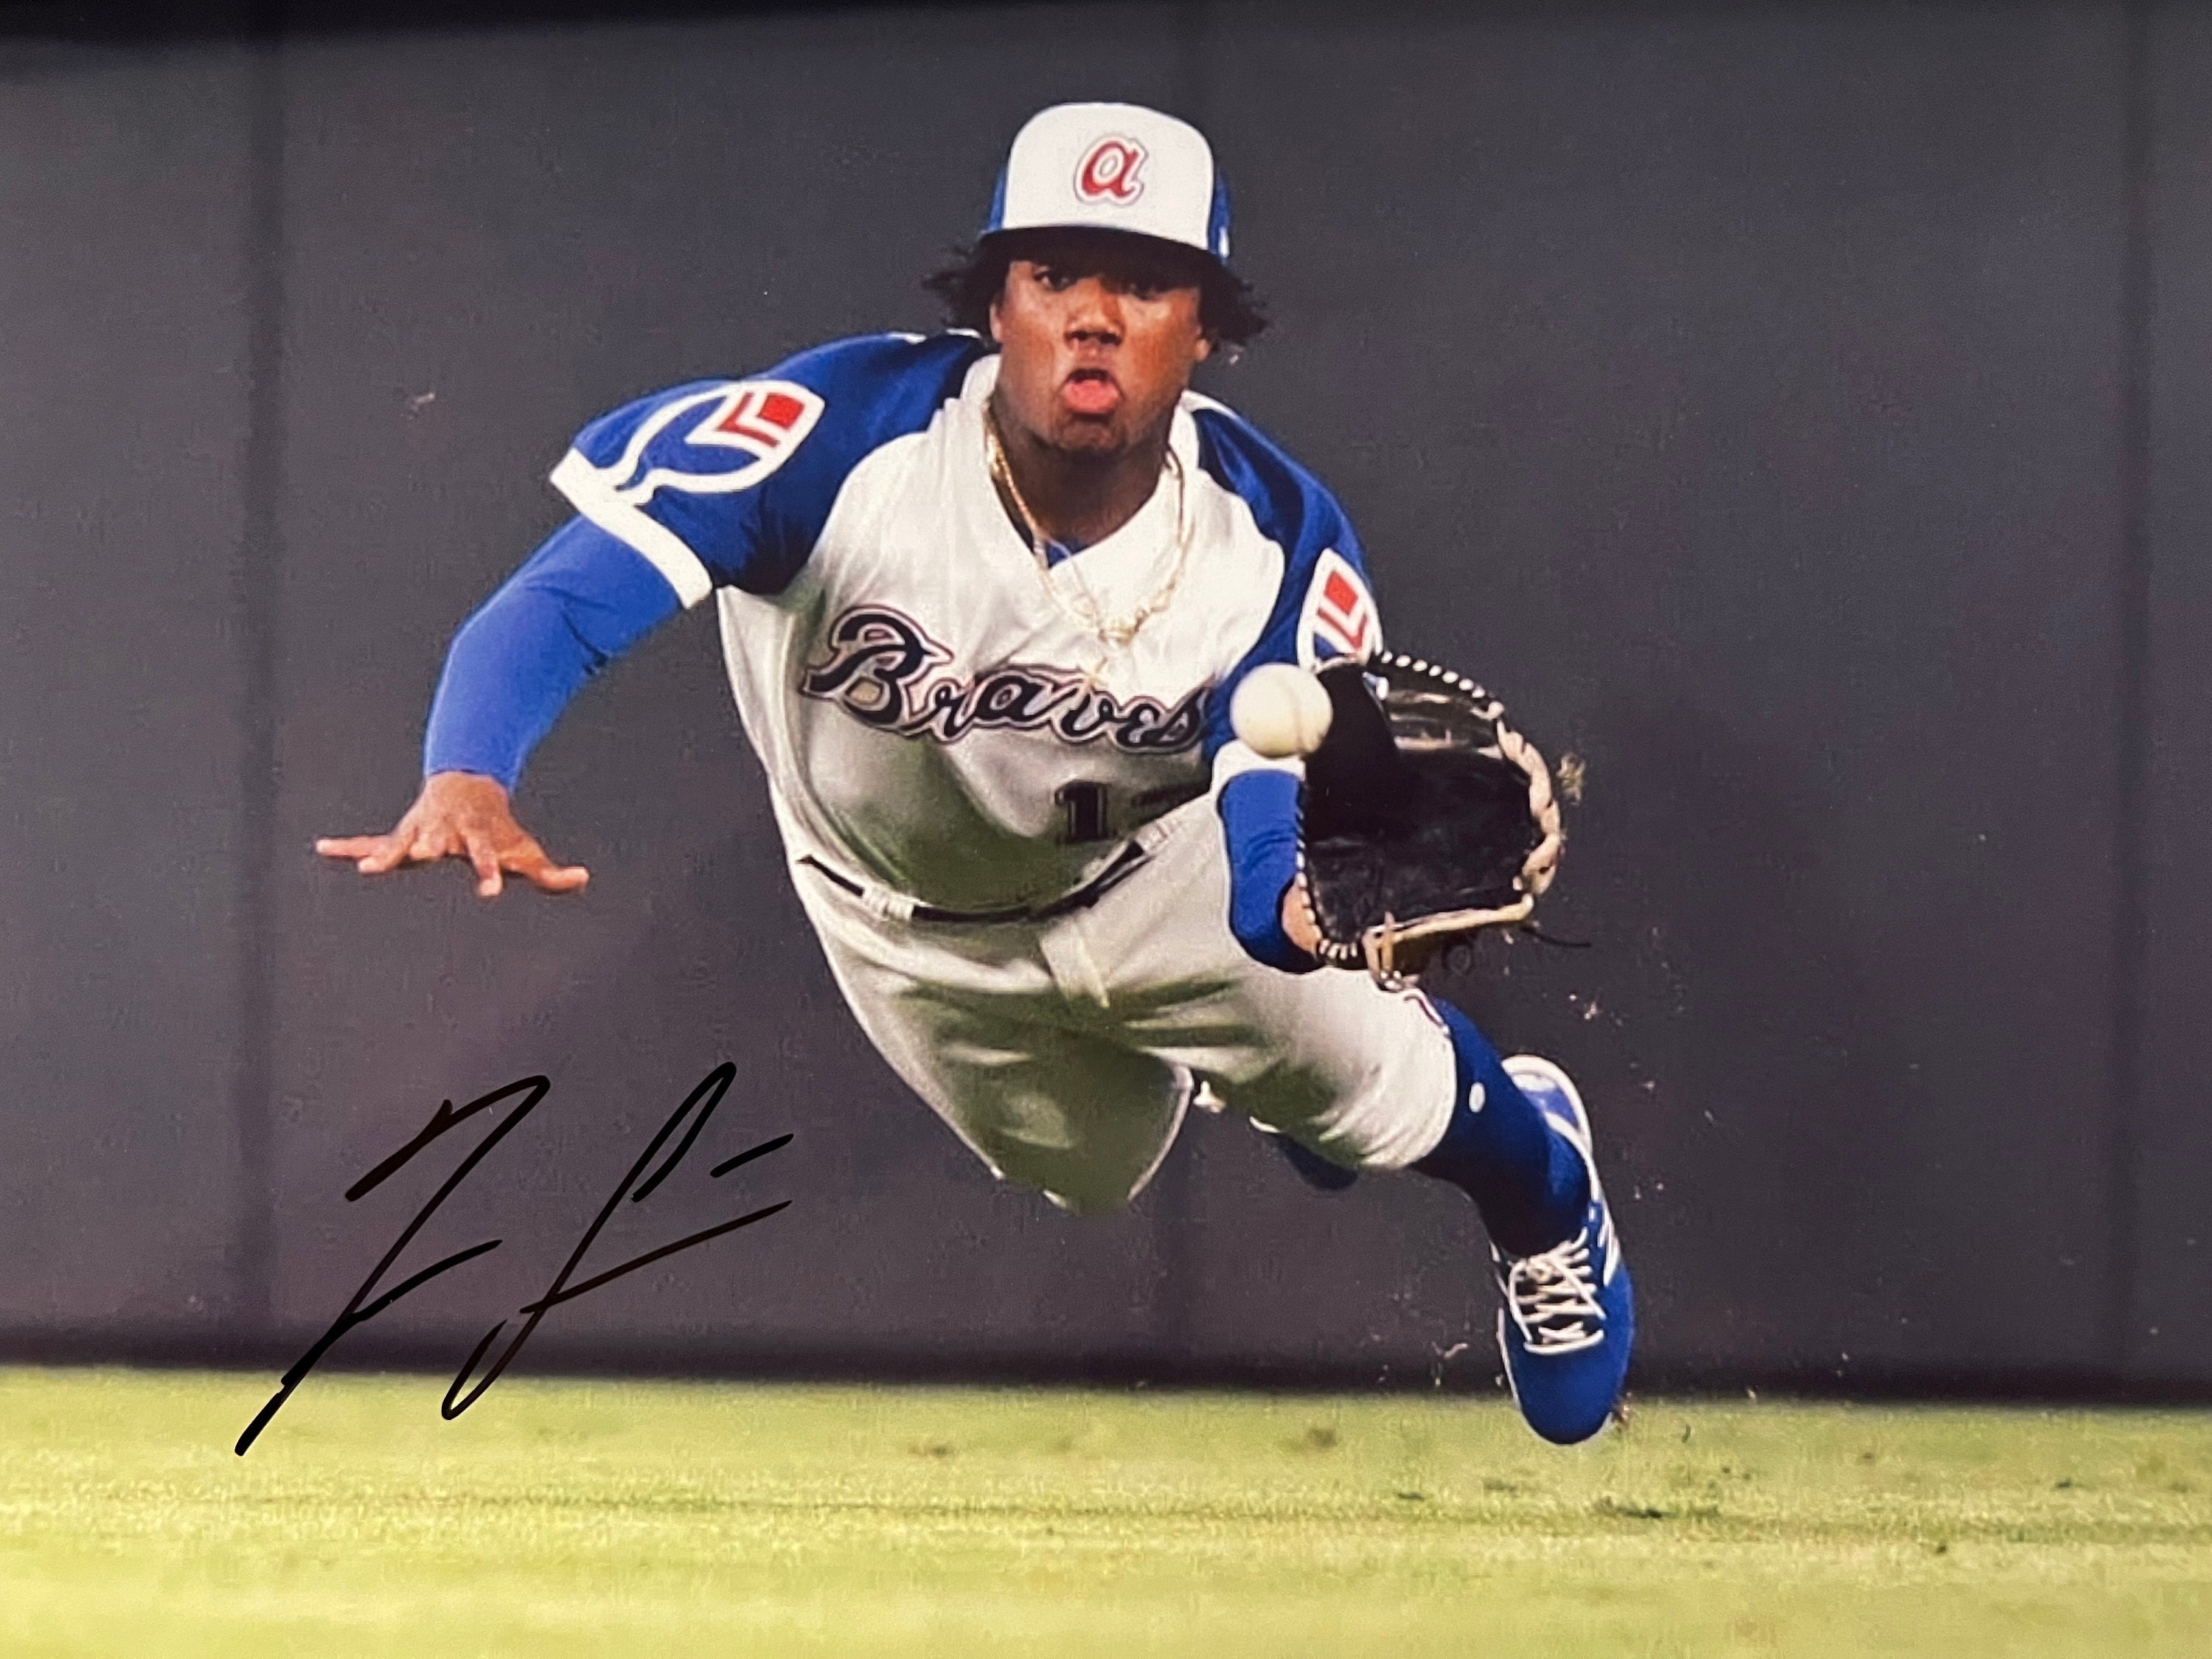 Atlanta Braves Ronald Acuna Jr. Autographed Framed Blue Jersey